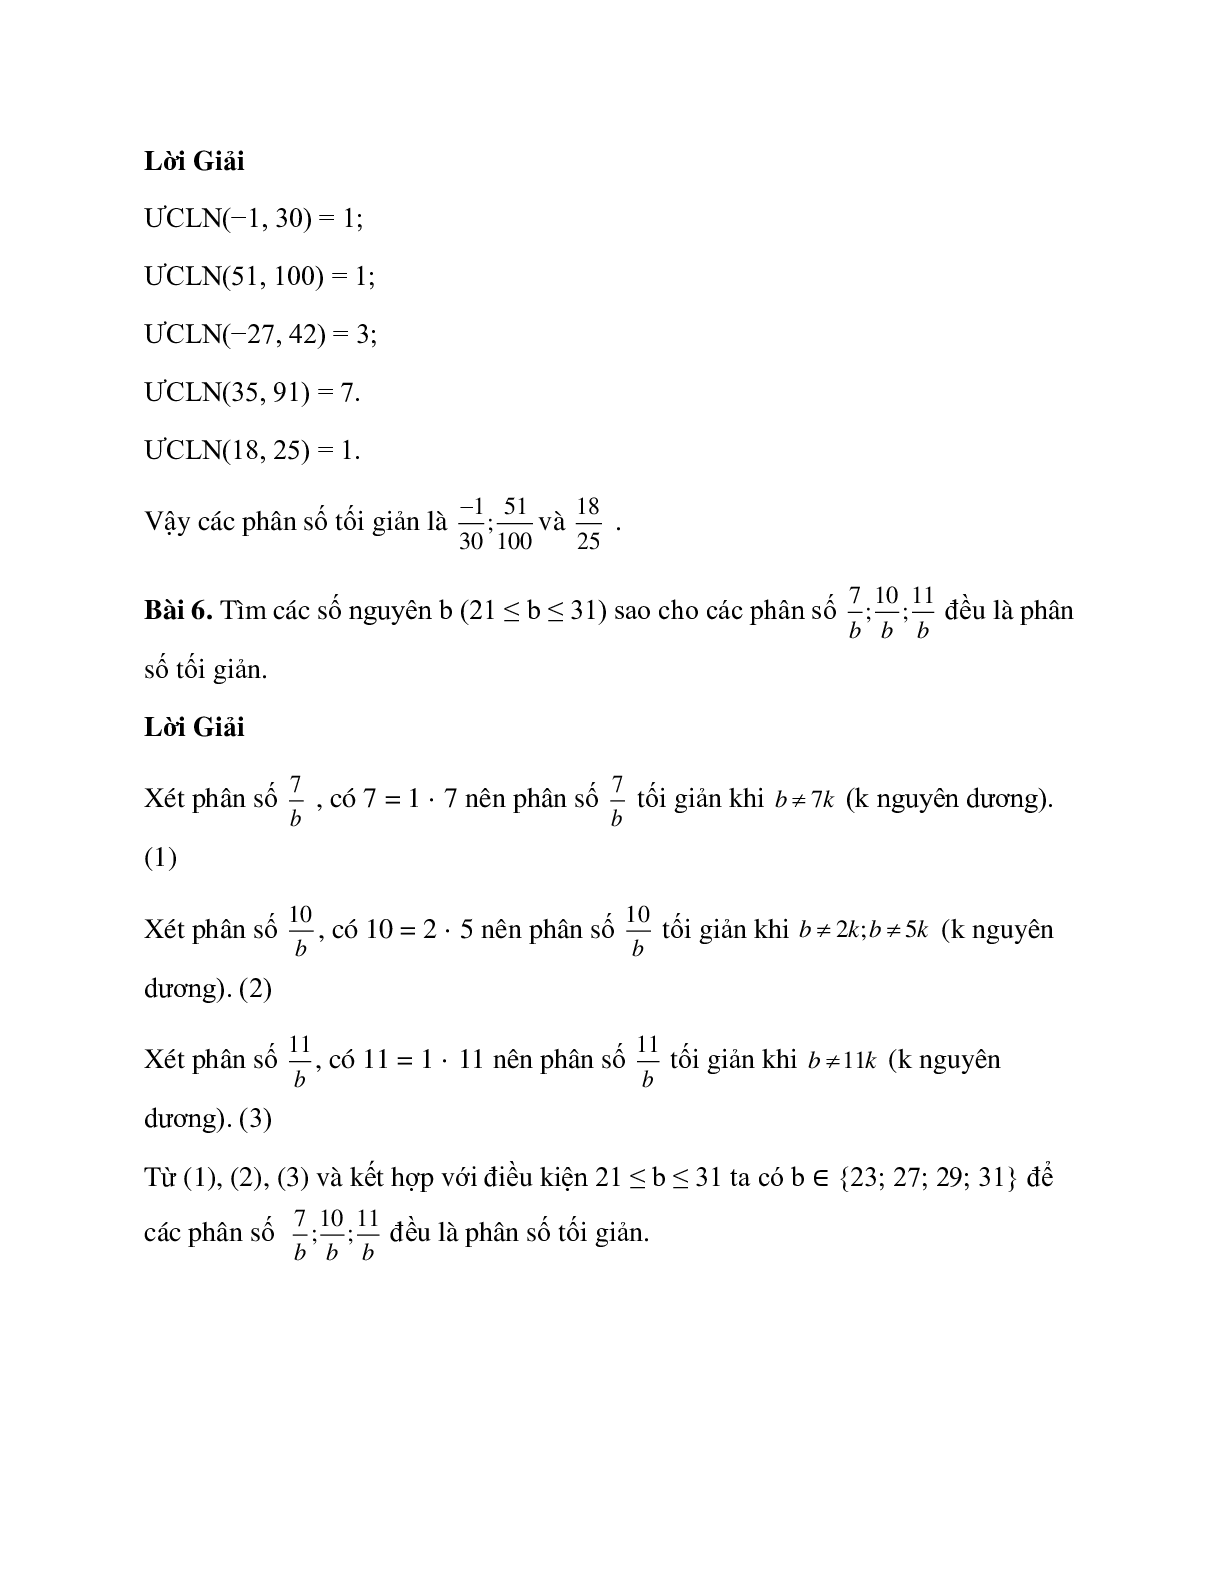 Hệ thống bài tập về tính chất cơ bản của phân số có lời giải (trang 8)